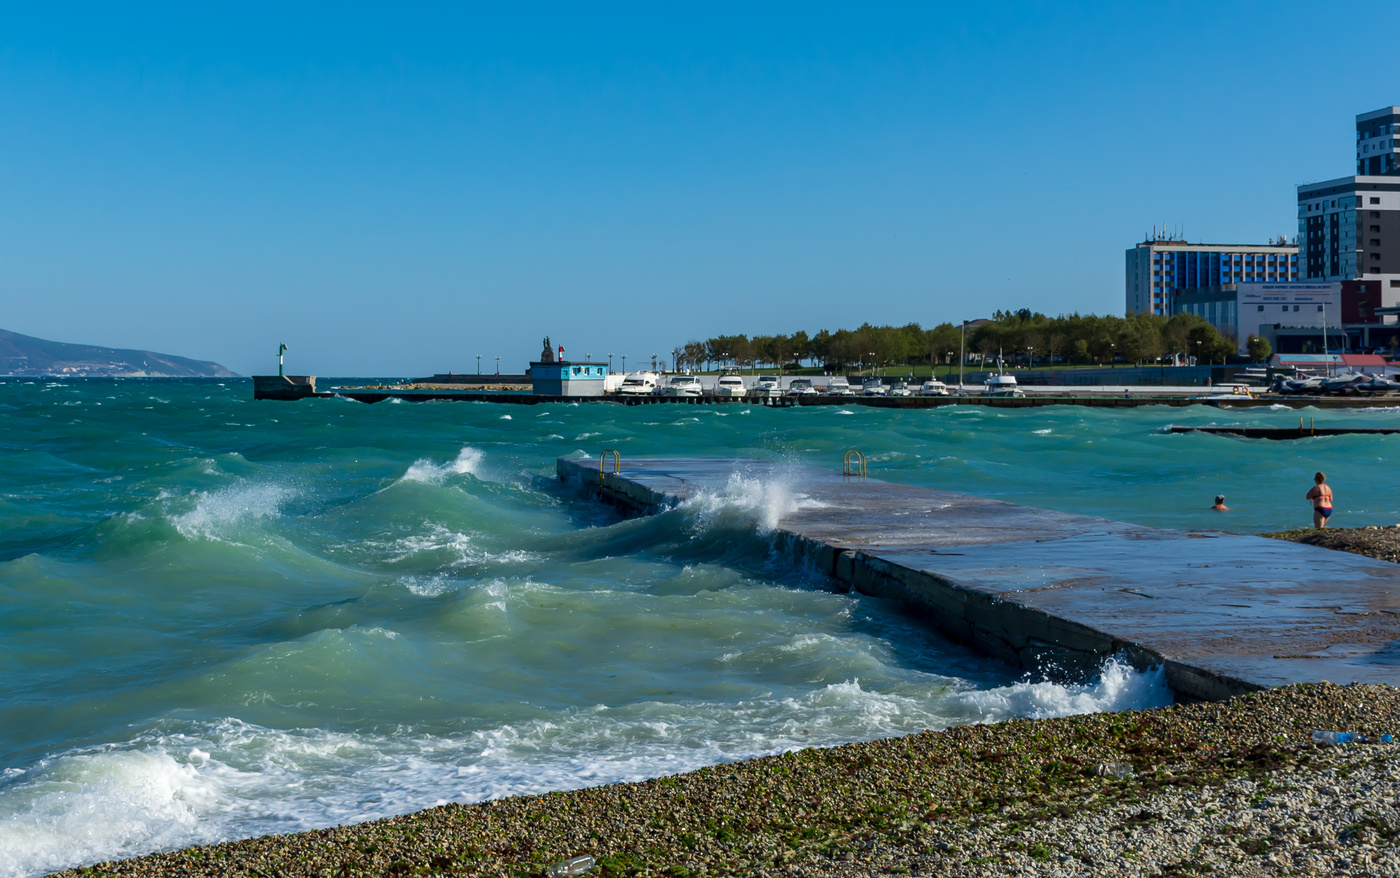  Море воняет, ценник конский, берег в мазуте: отзывы туристов и местных жителей об отдыхе на черном море  